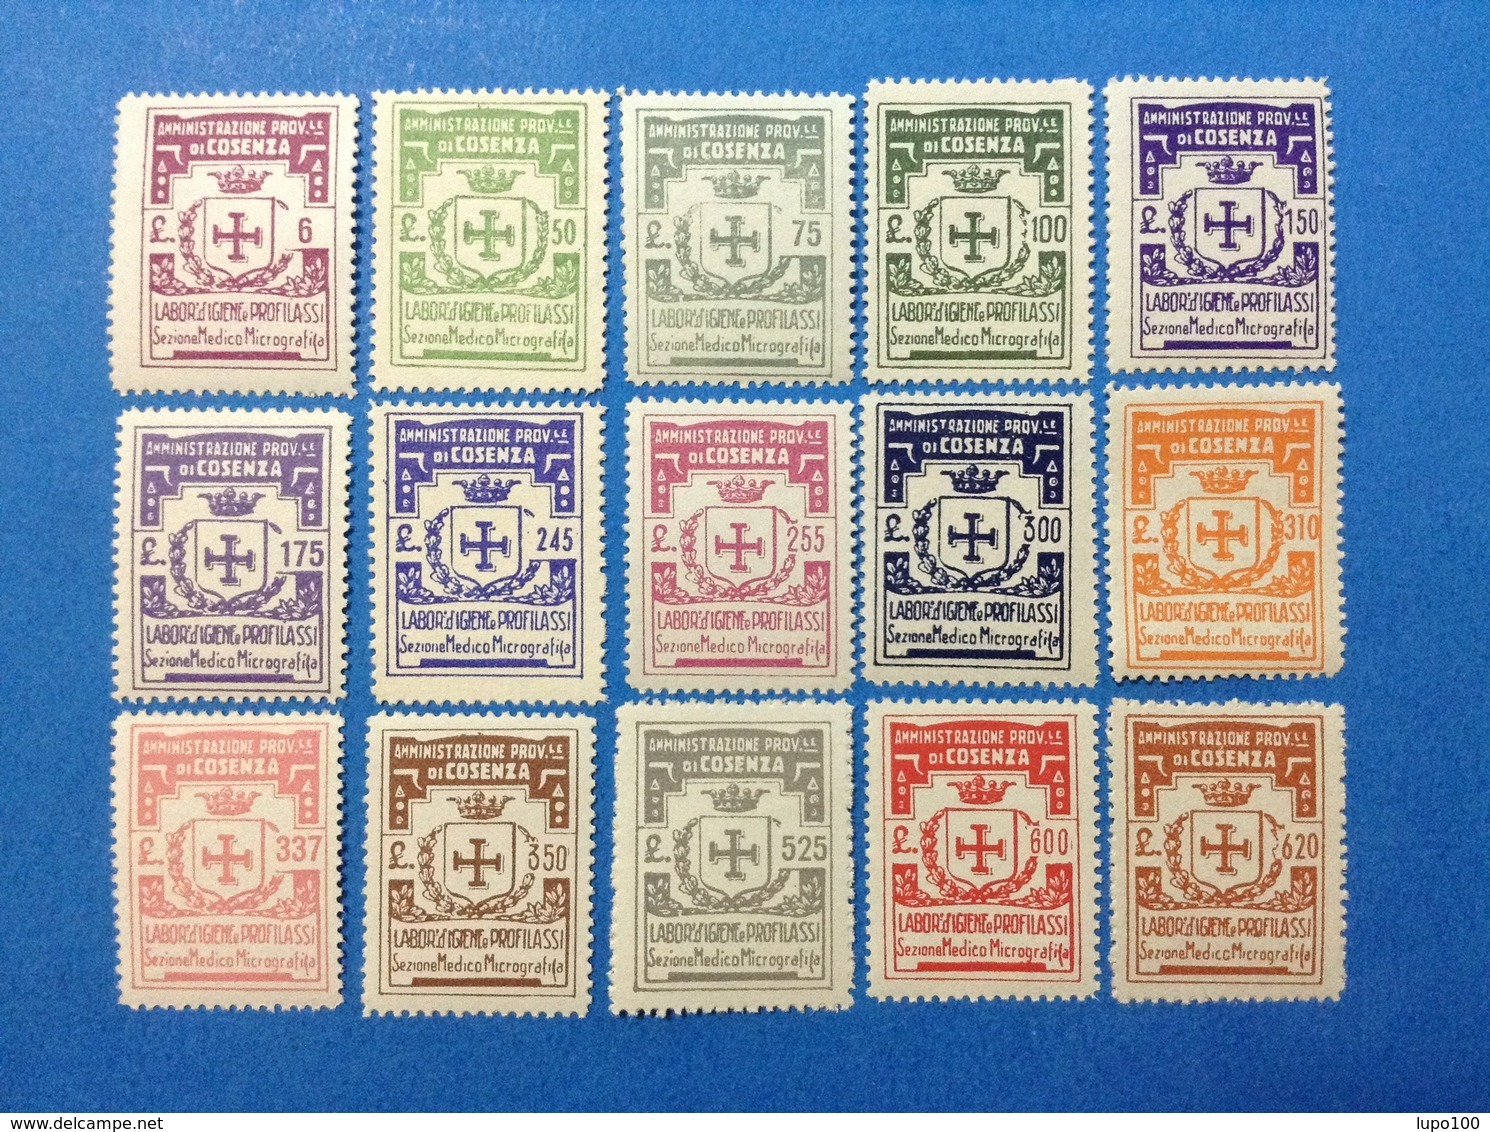 ITALIA LOTTO 15 MARCHE DA BOLLO NUOVE MNH** IGIENE E PROFILASSI LOCAL MUNICIPAL STEMPELMARKE FISCAUX REVENUE - Revenue Stamps